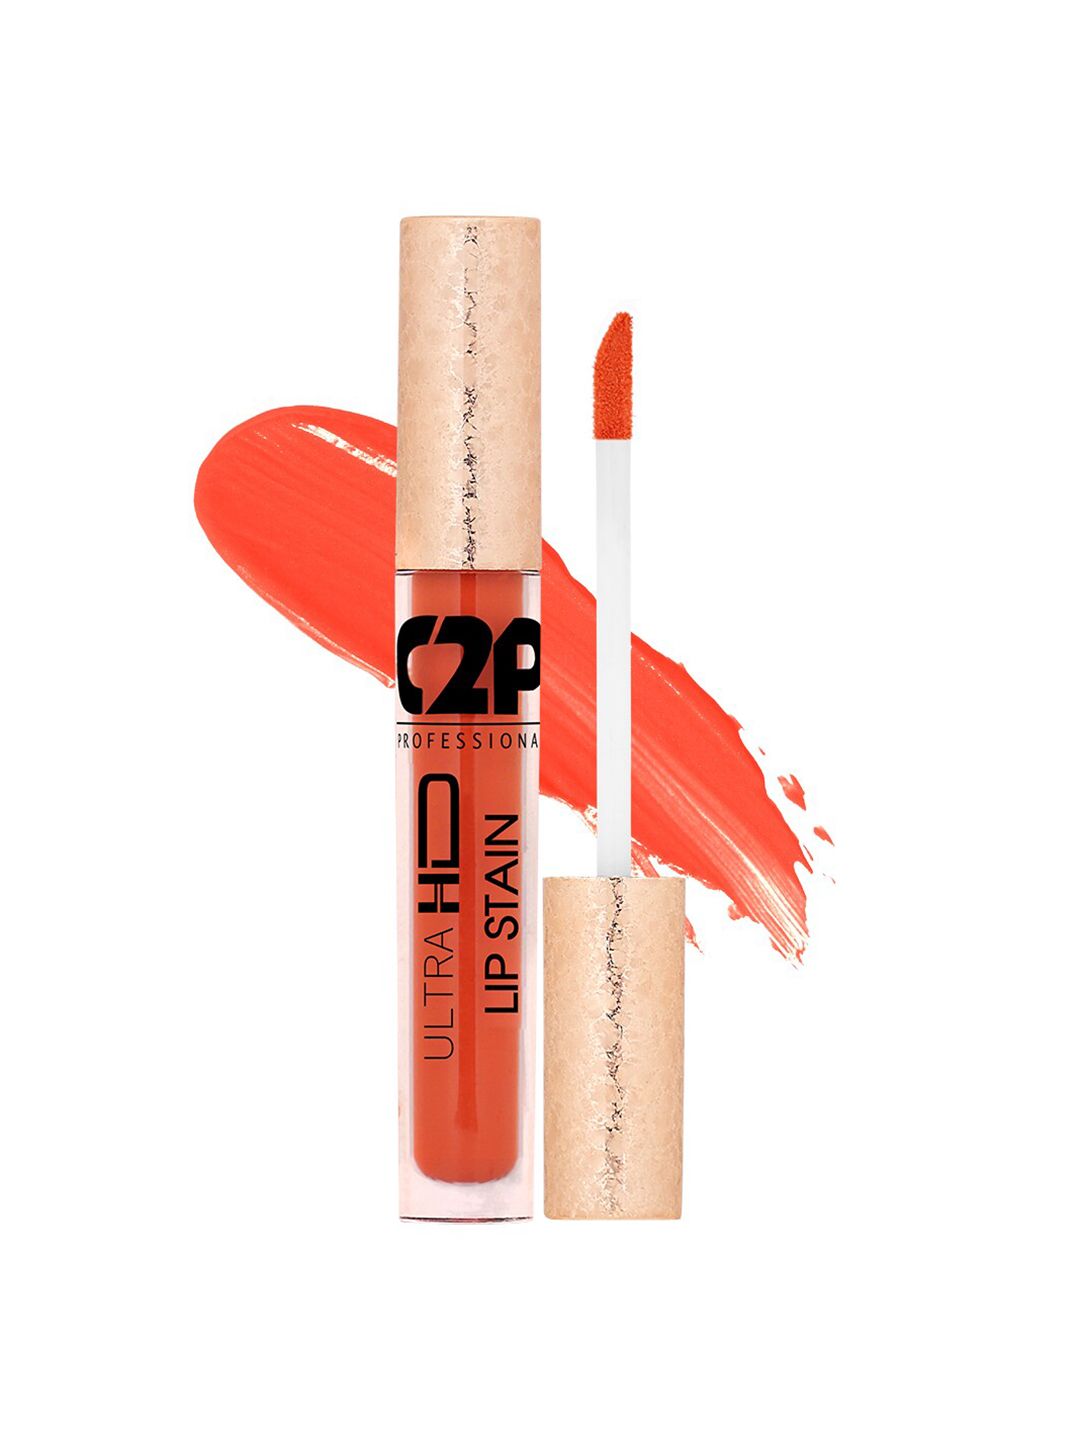 C2P PROFESSIONAL MAKEUP Lip Stain Liquid Lipstick - Raging Rave 01 5ml Price in India